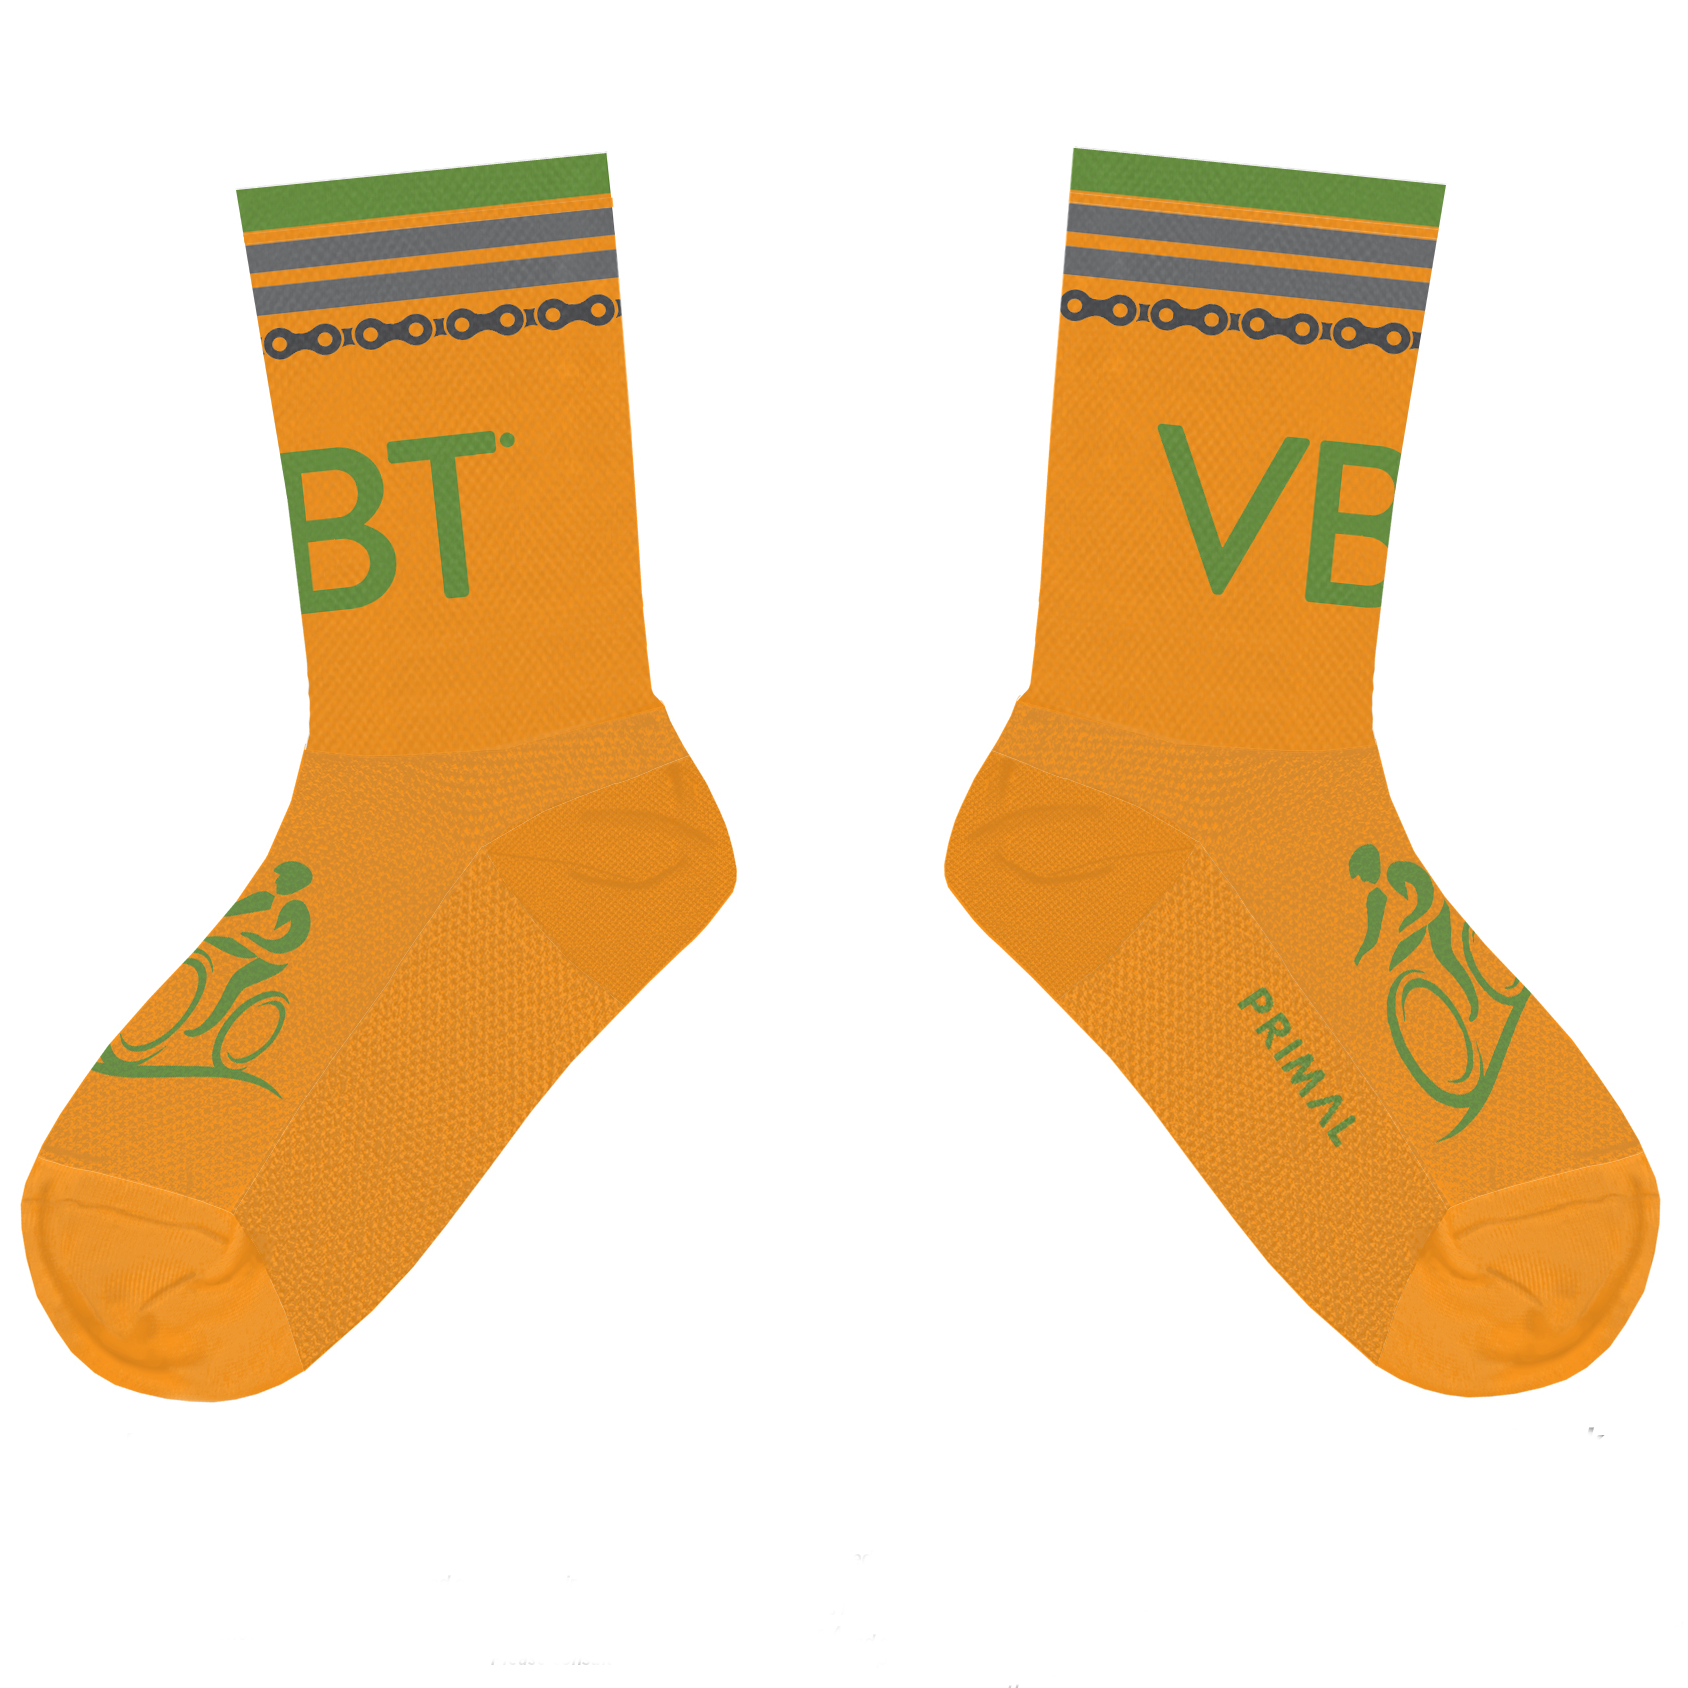 Tall Cuff Cycling Socks in VBT Orange